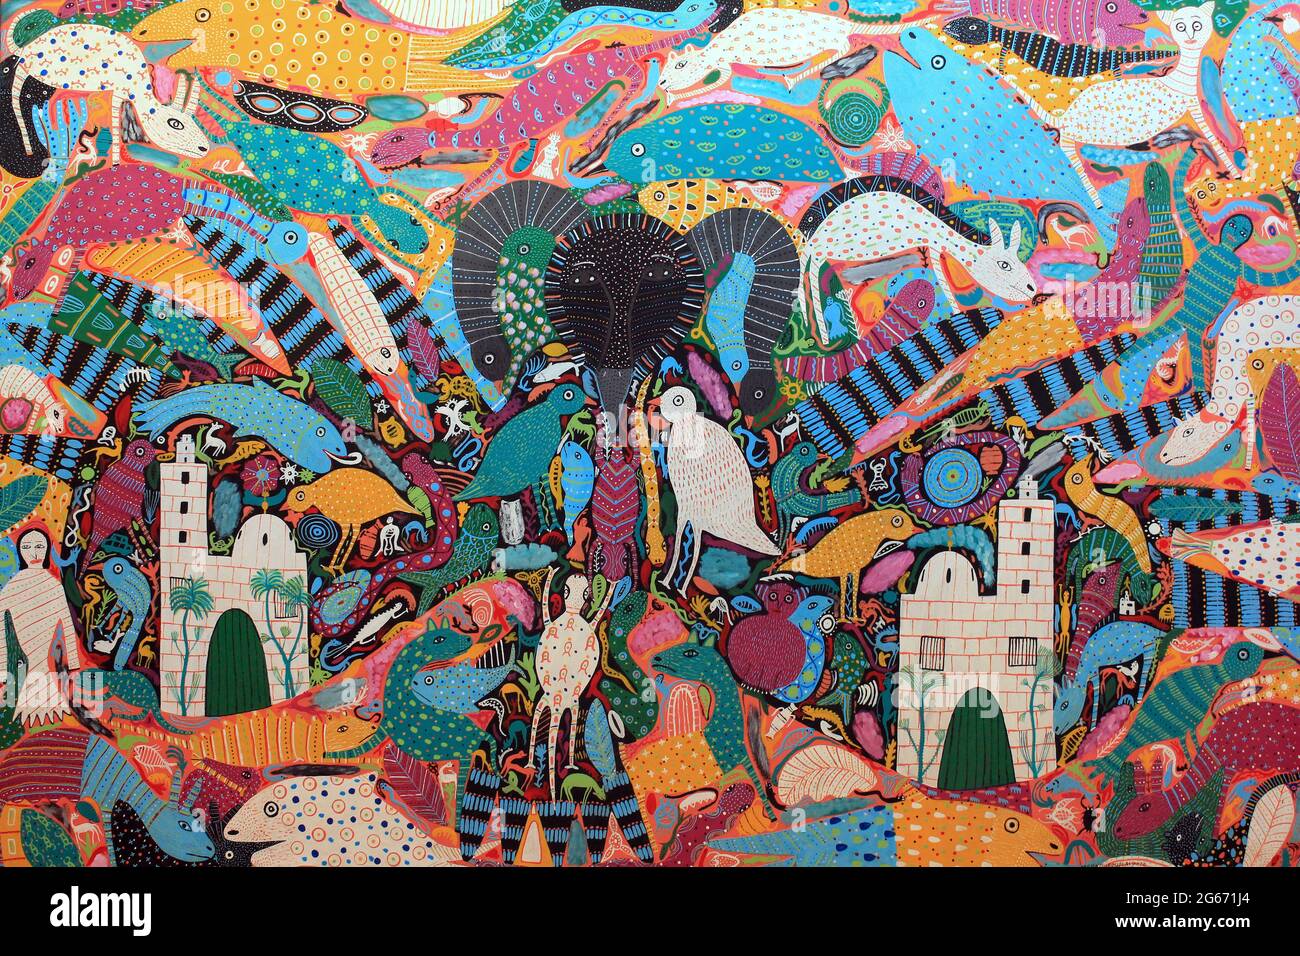 Style colorés de la peinture abstraite par des artistes populaires d'Essaouira, Maroc Banque D'Images